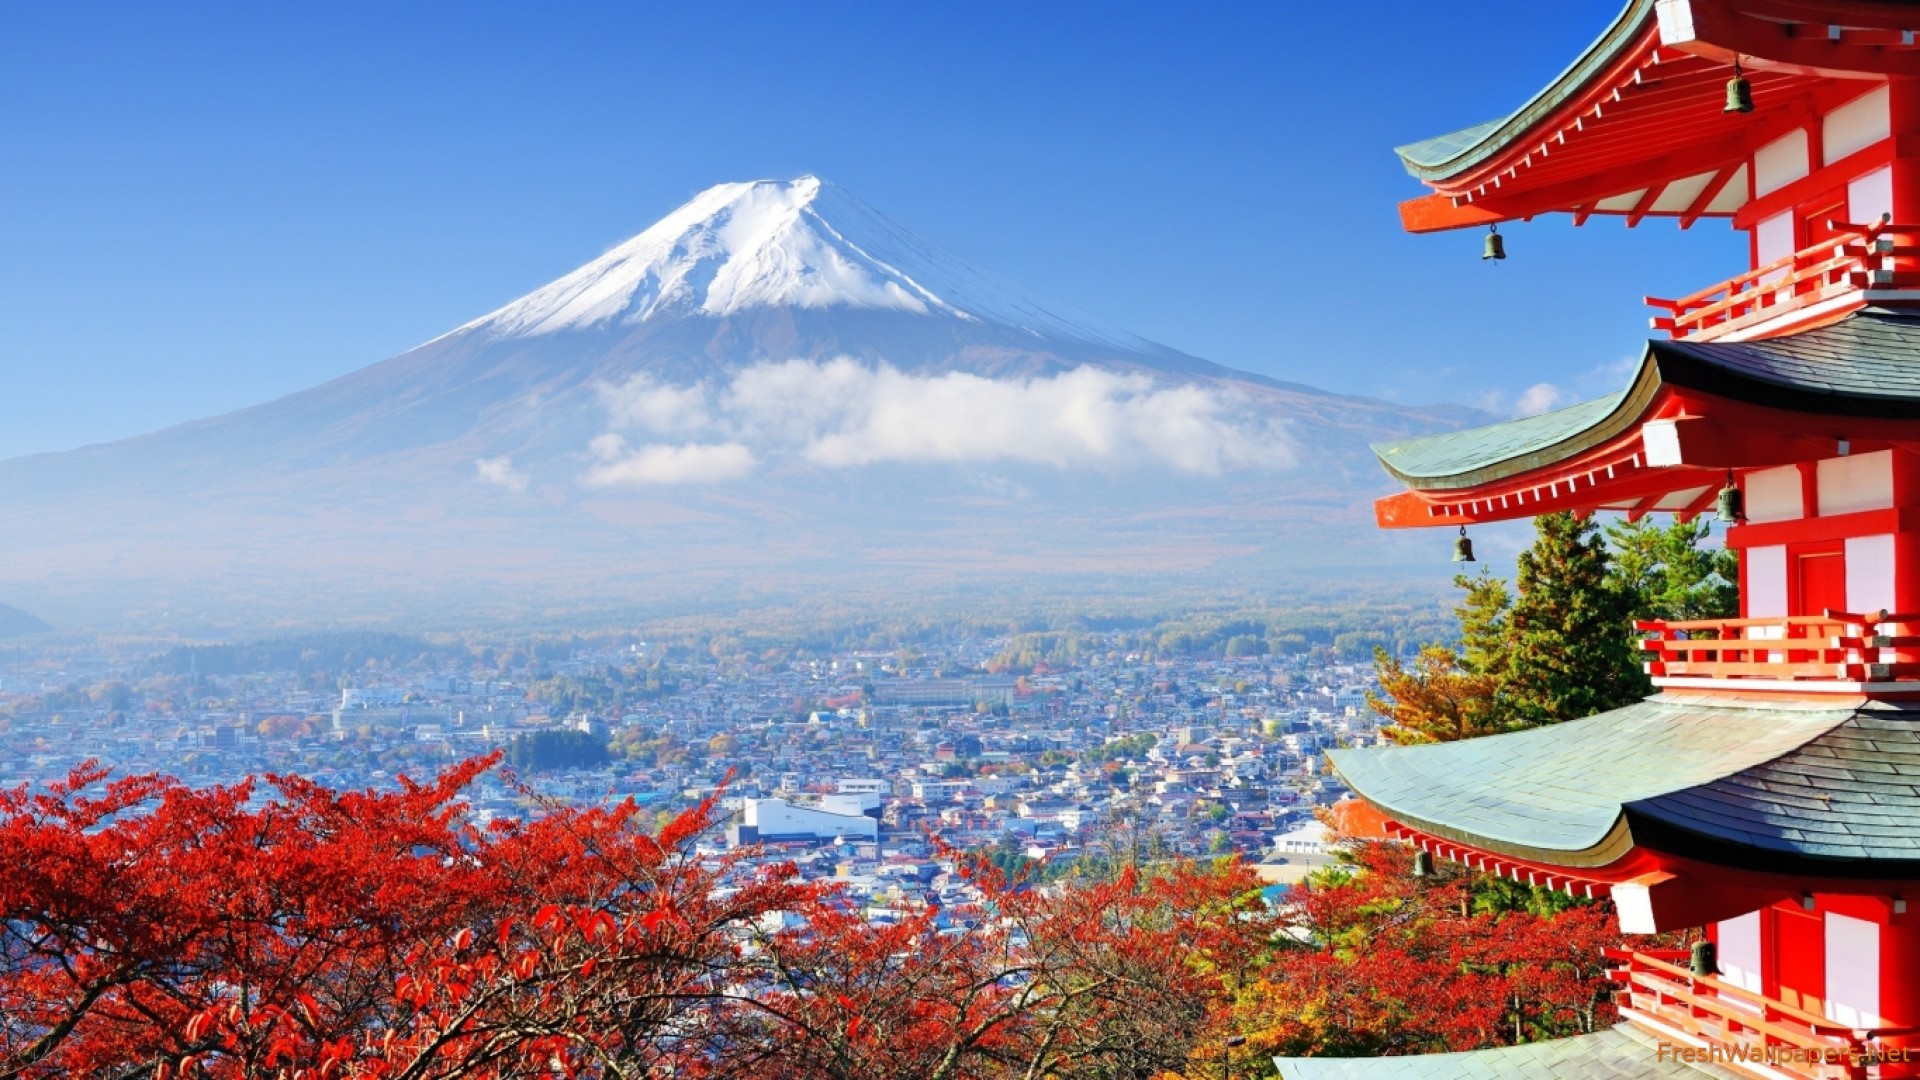 تور ژاپن با پرواز مستقیم و اقامت 7 روزه در بهترین هتل های کشور ژاپن